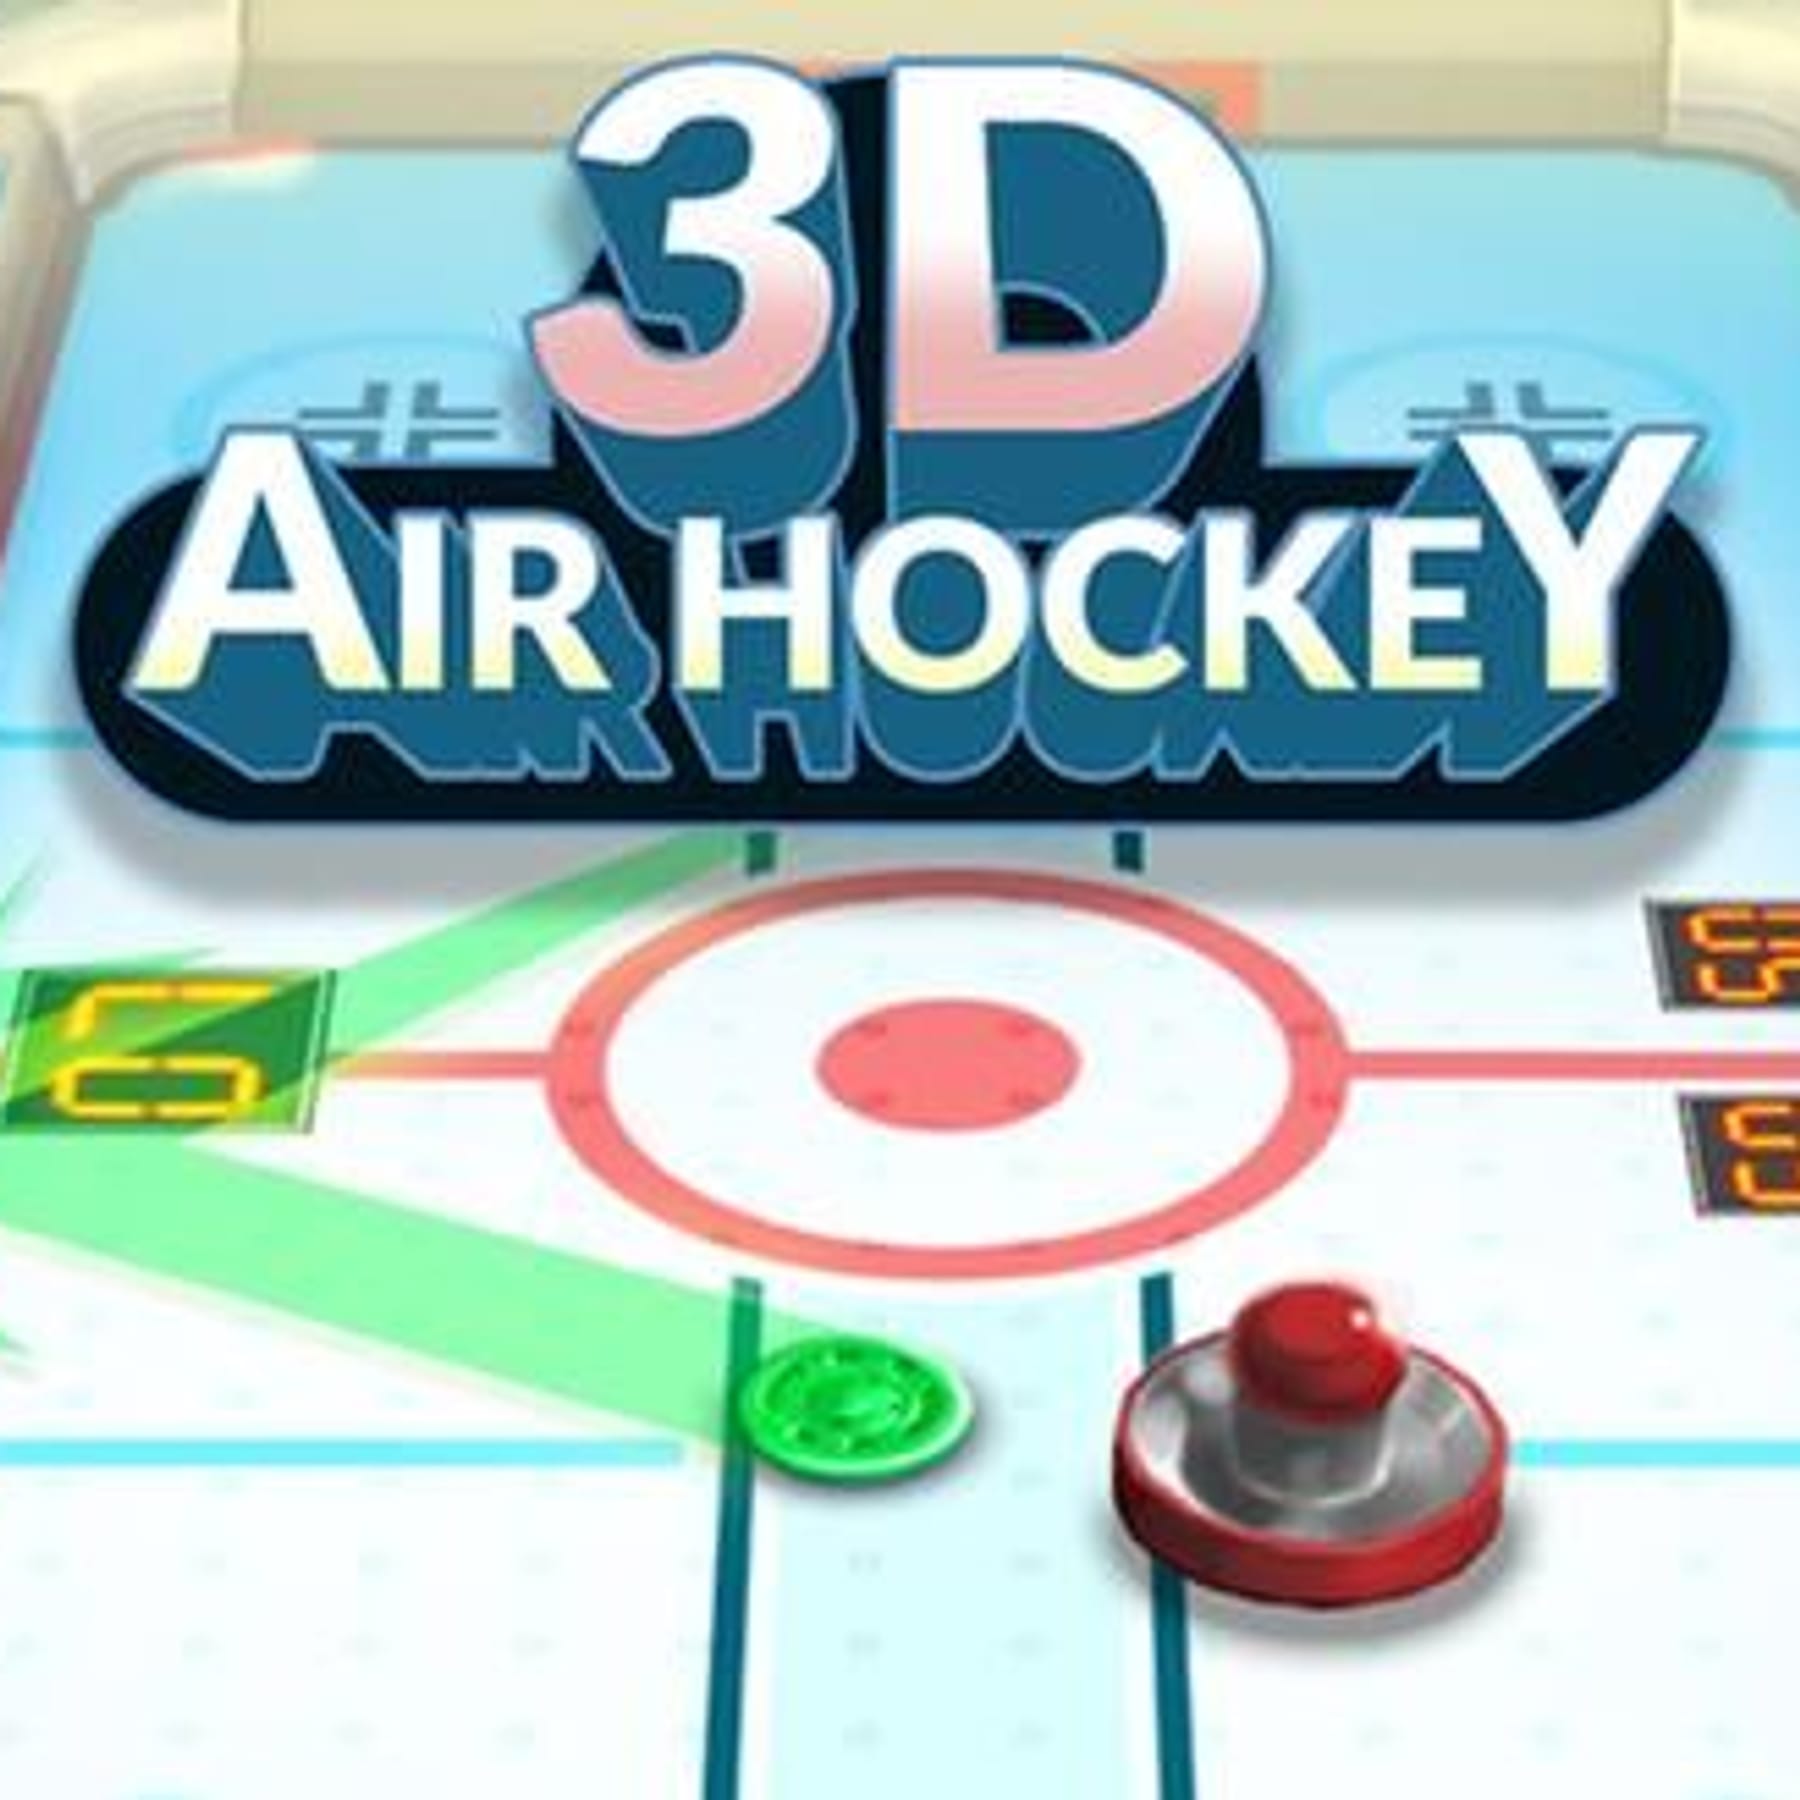 3D Air Hockey kostenlos online spielen bei t-online.de